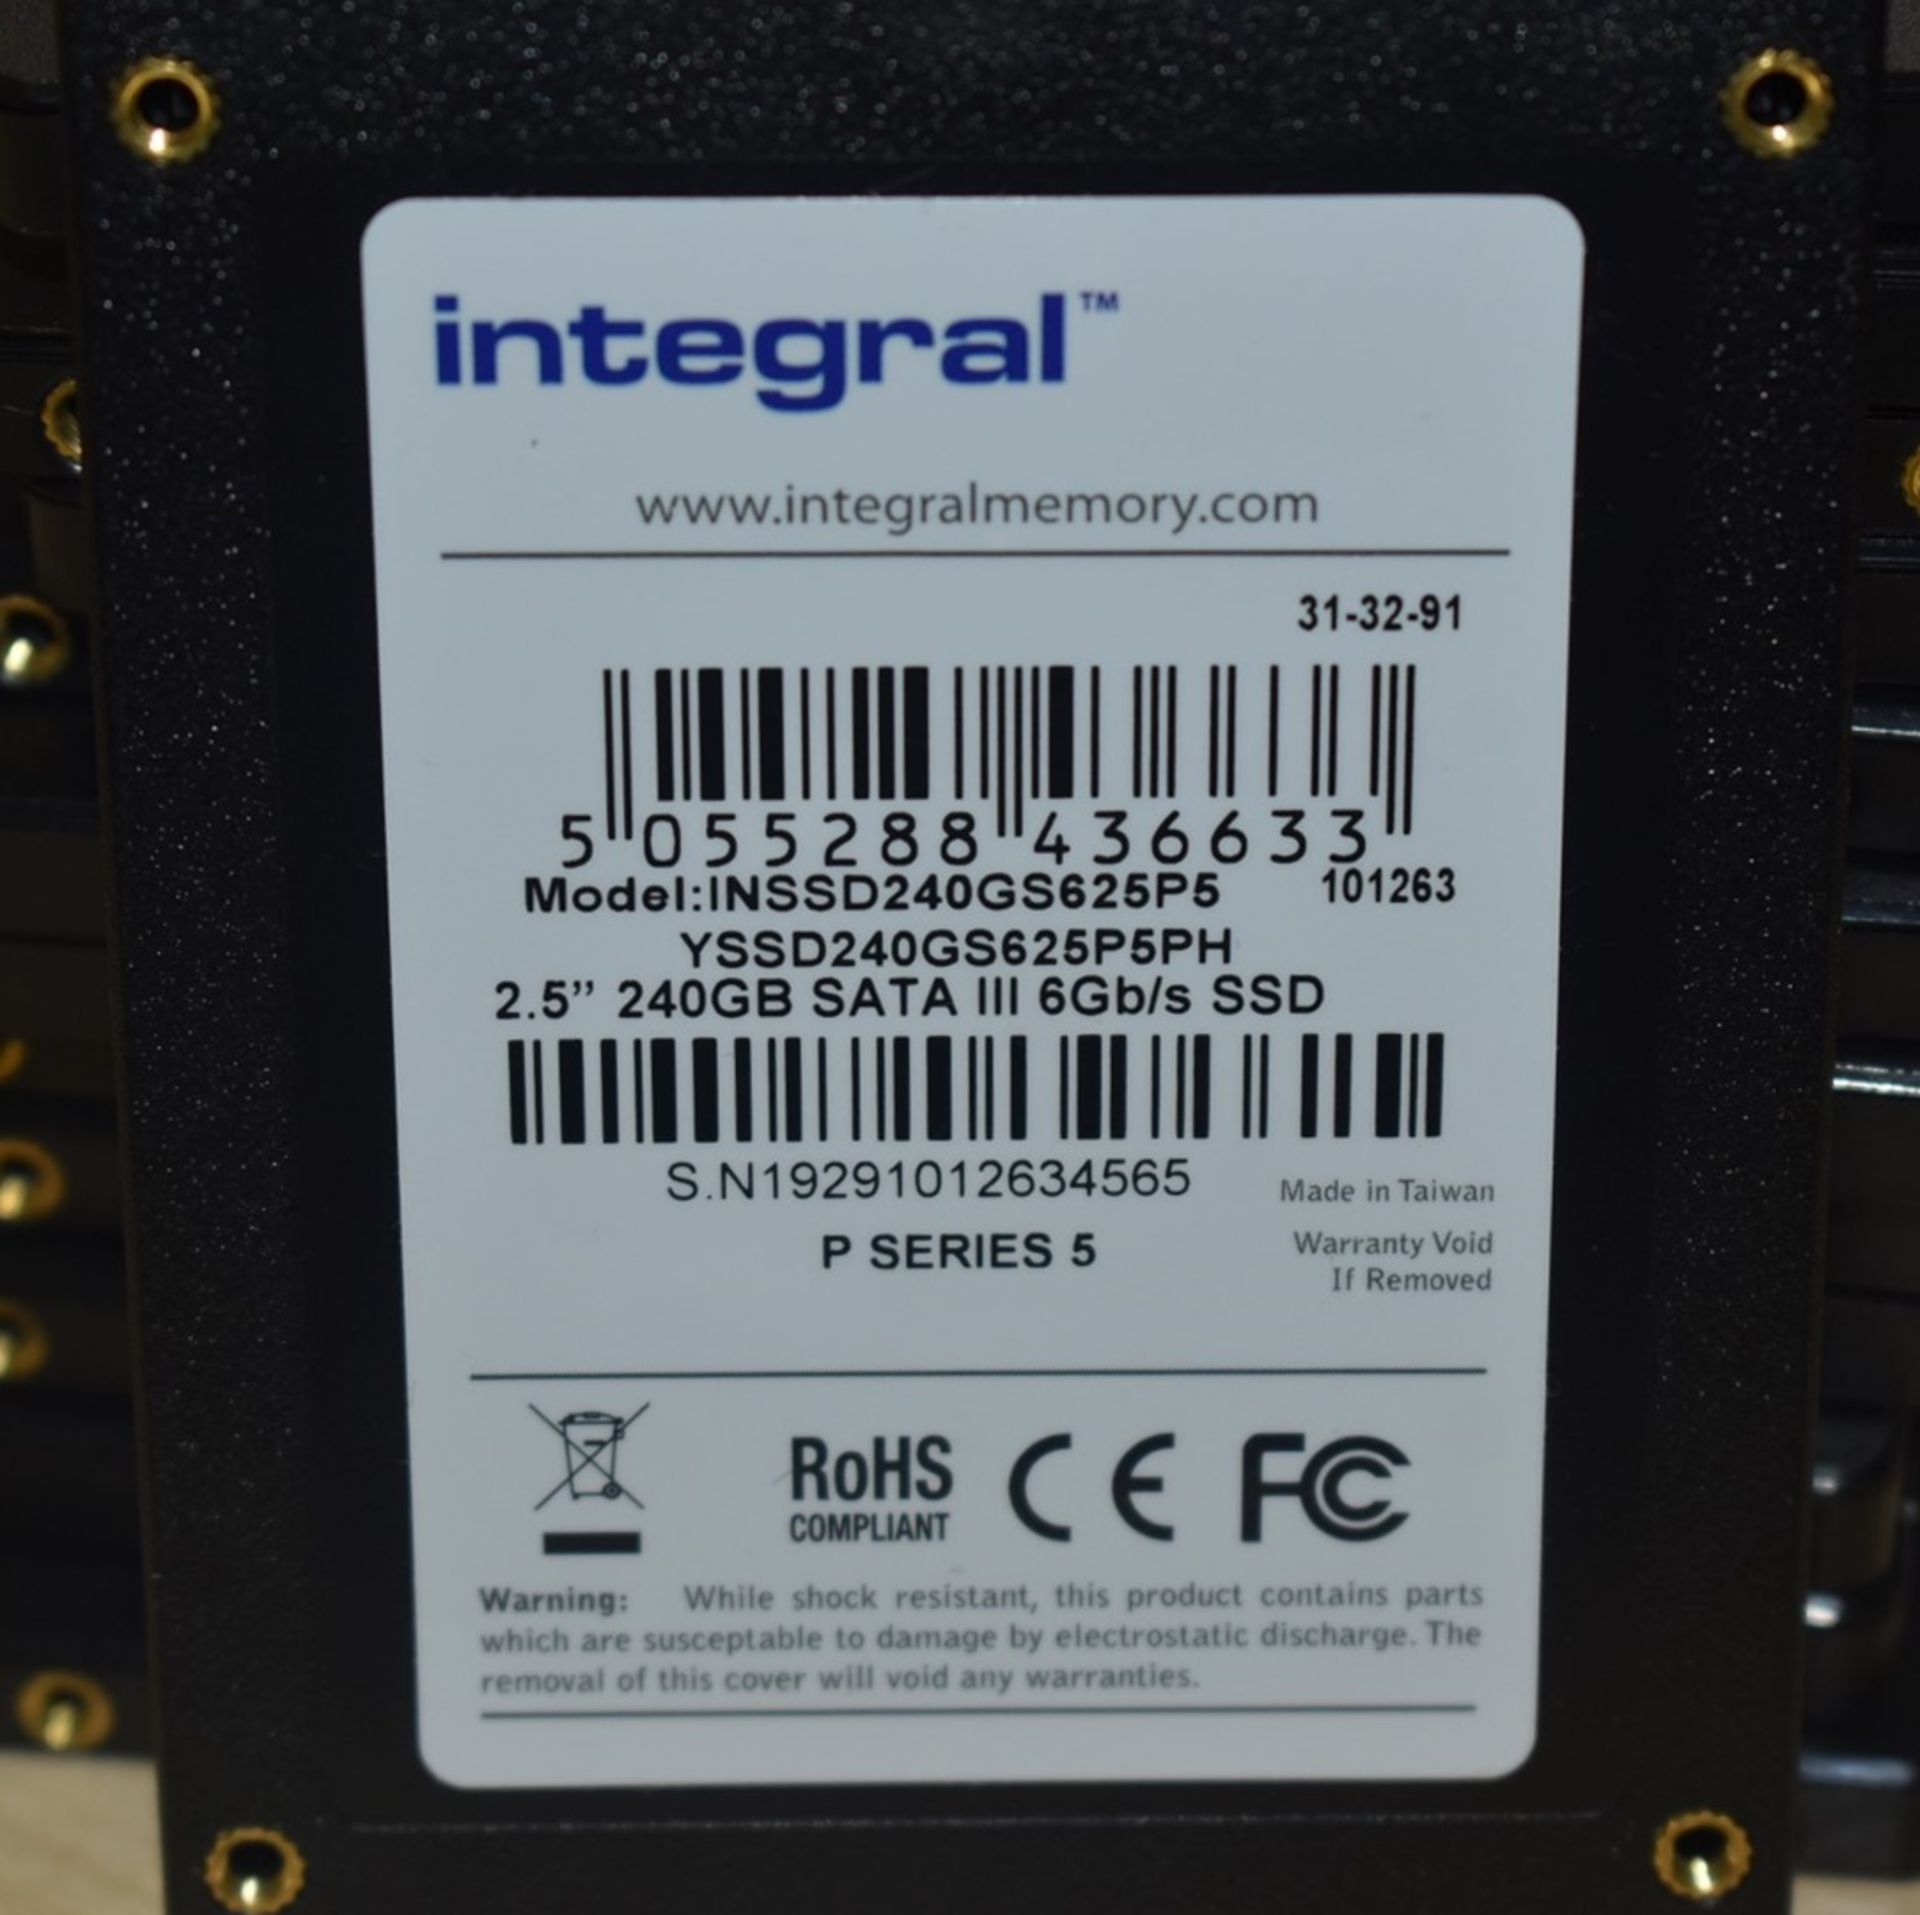 1 x Integral 240gb SAT III 6gb/s 2.5" SSD Hard Drive - Ref: MPCJ - CL678 - Location: Altrincham - Image 3 of 3